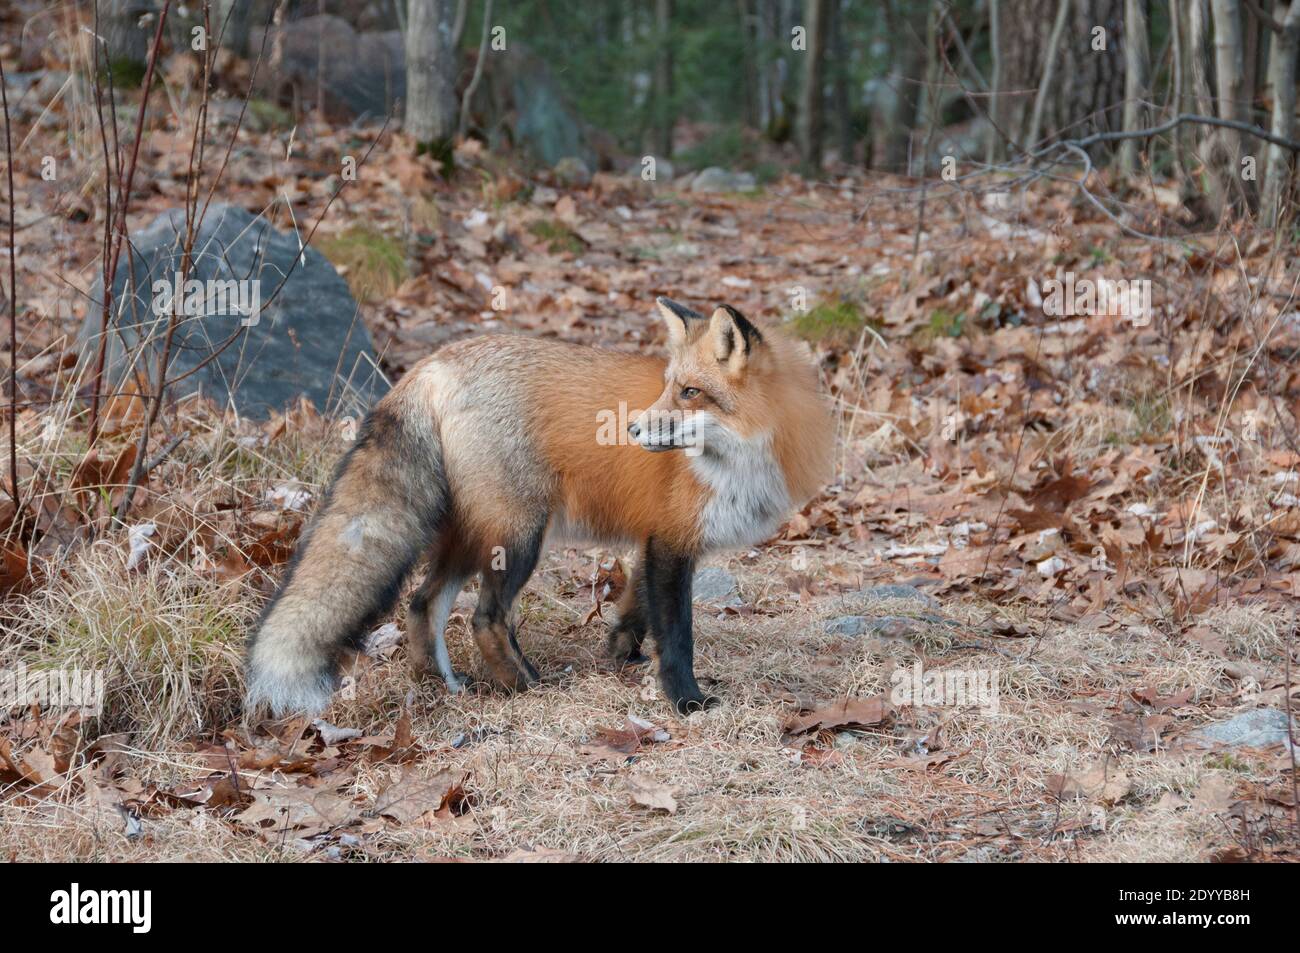 Vista laterale ravvicinata della volpe rossa nella foresta durante la stagione autunnale che mostra il corpo pieno e la coda boscata nel suo ambiente e habitat. Immagine FOX. Foto Stock